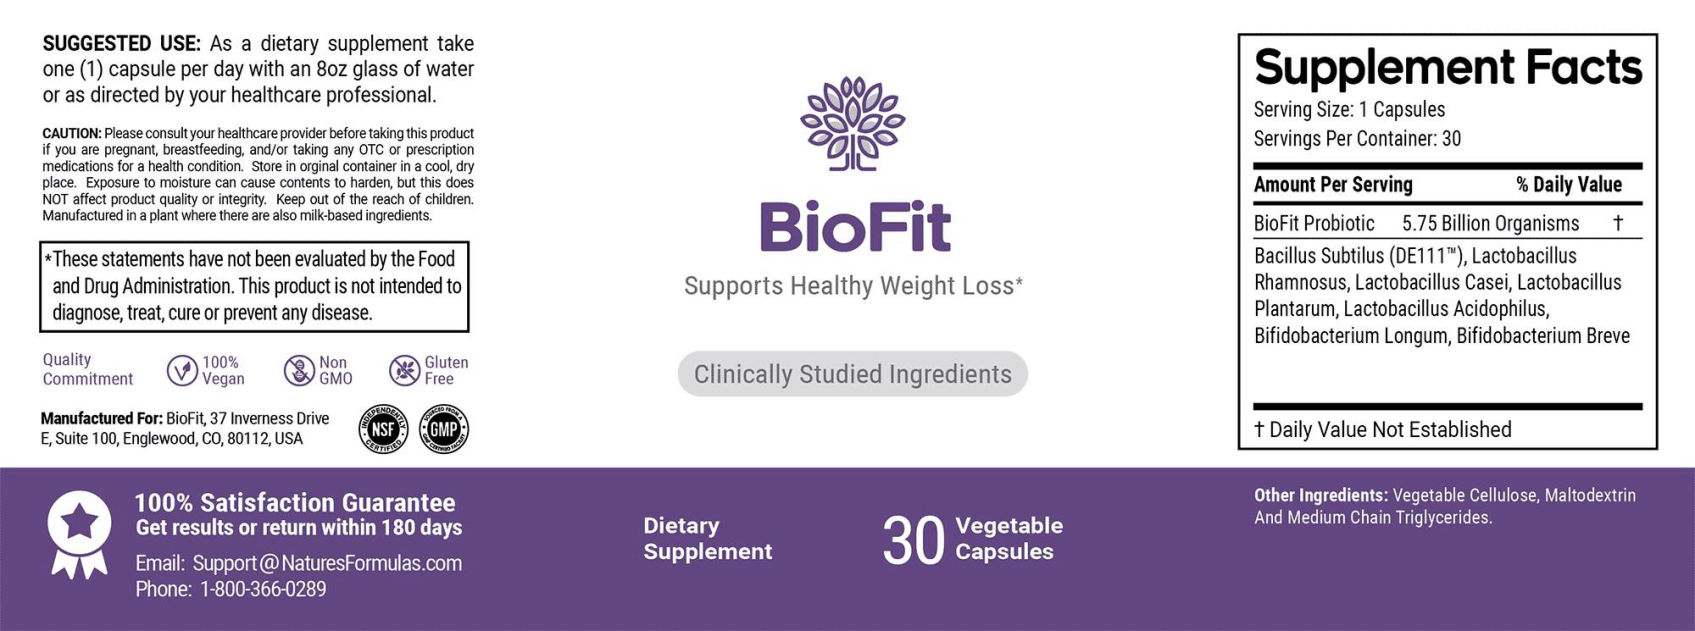 BioFit supplement facts